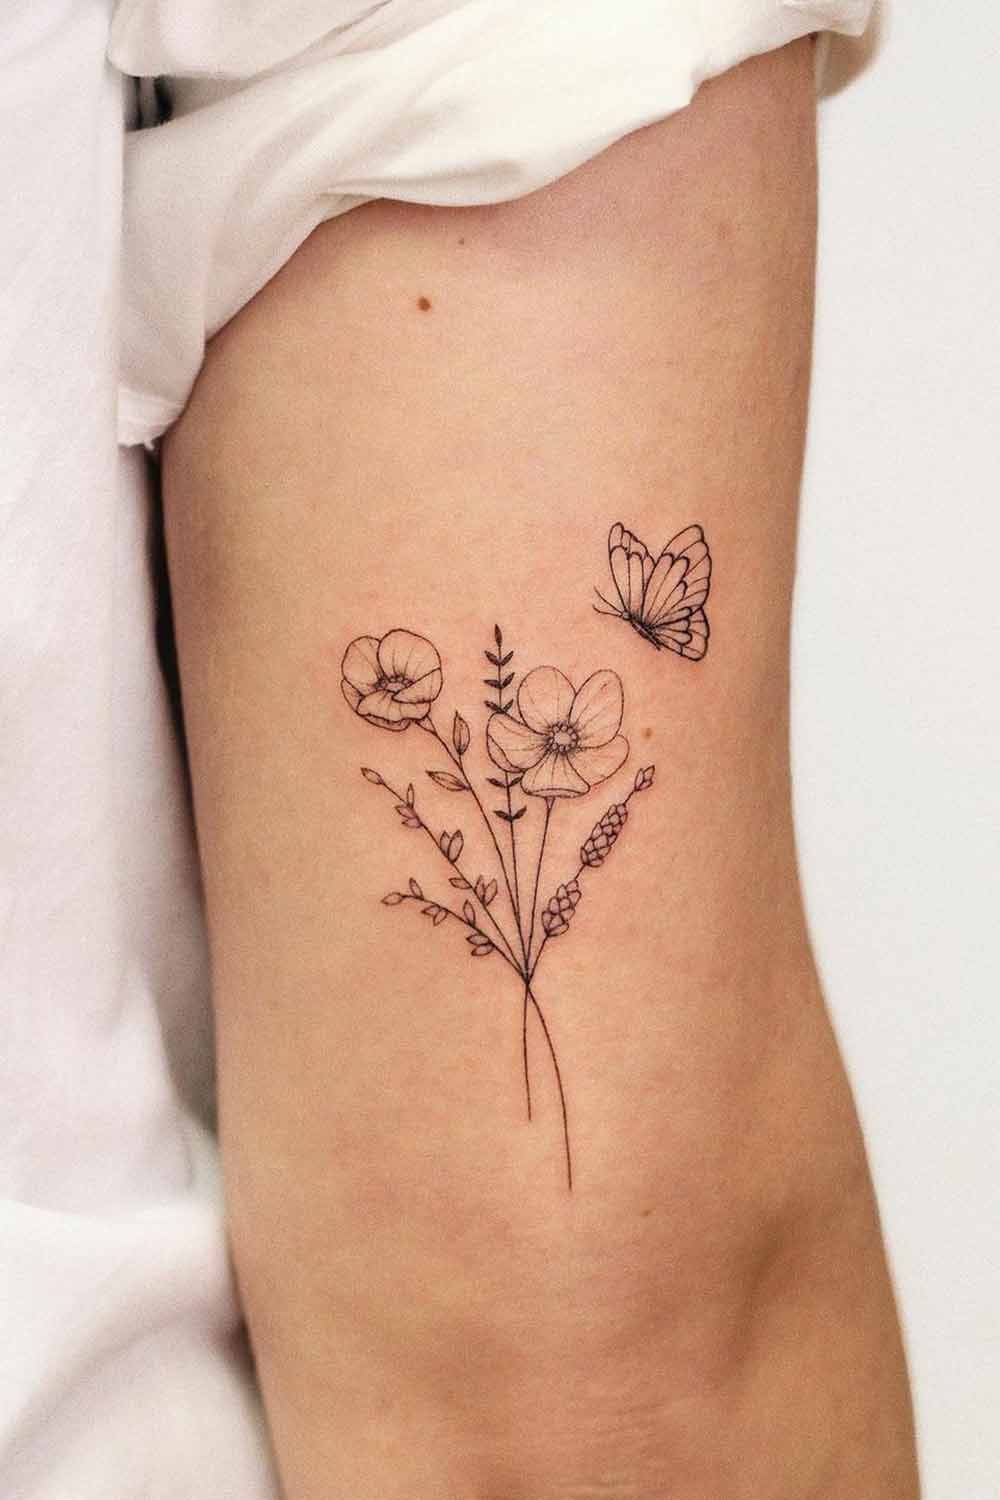 tatuagem-de-ramo-de-flor-com-borboleta-no-braco 